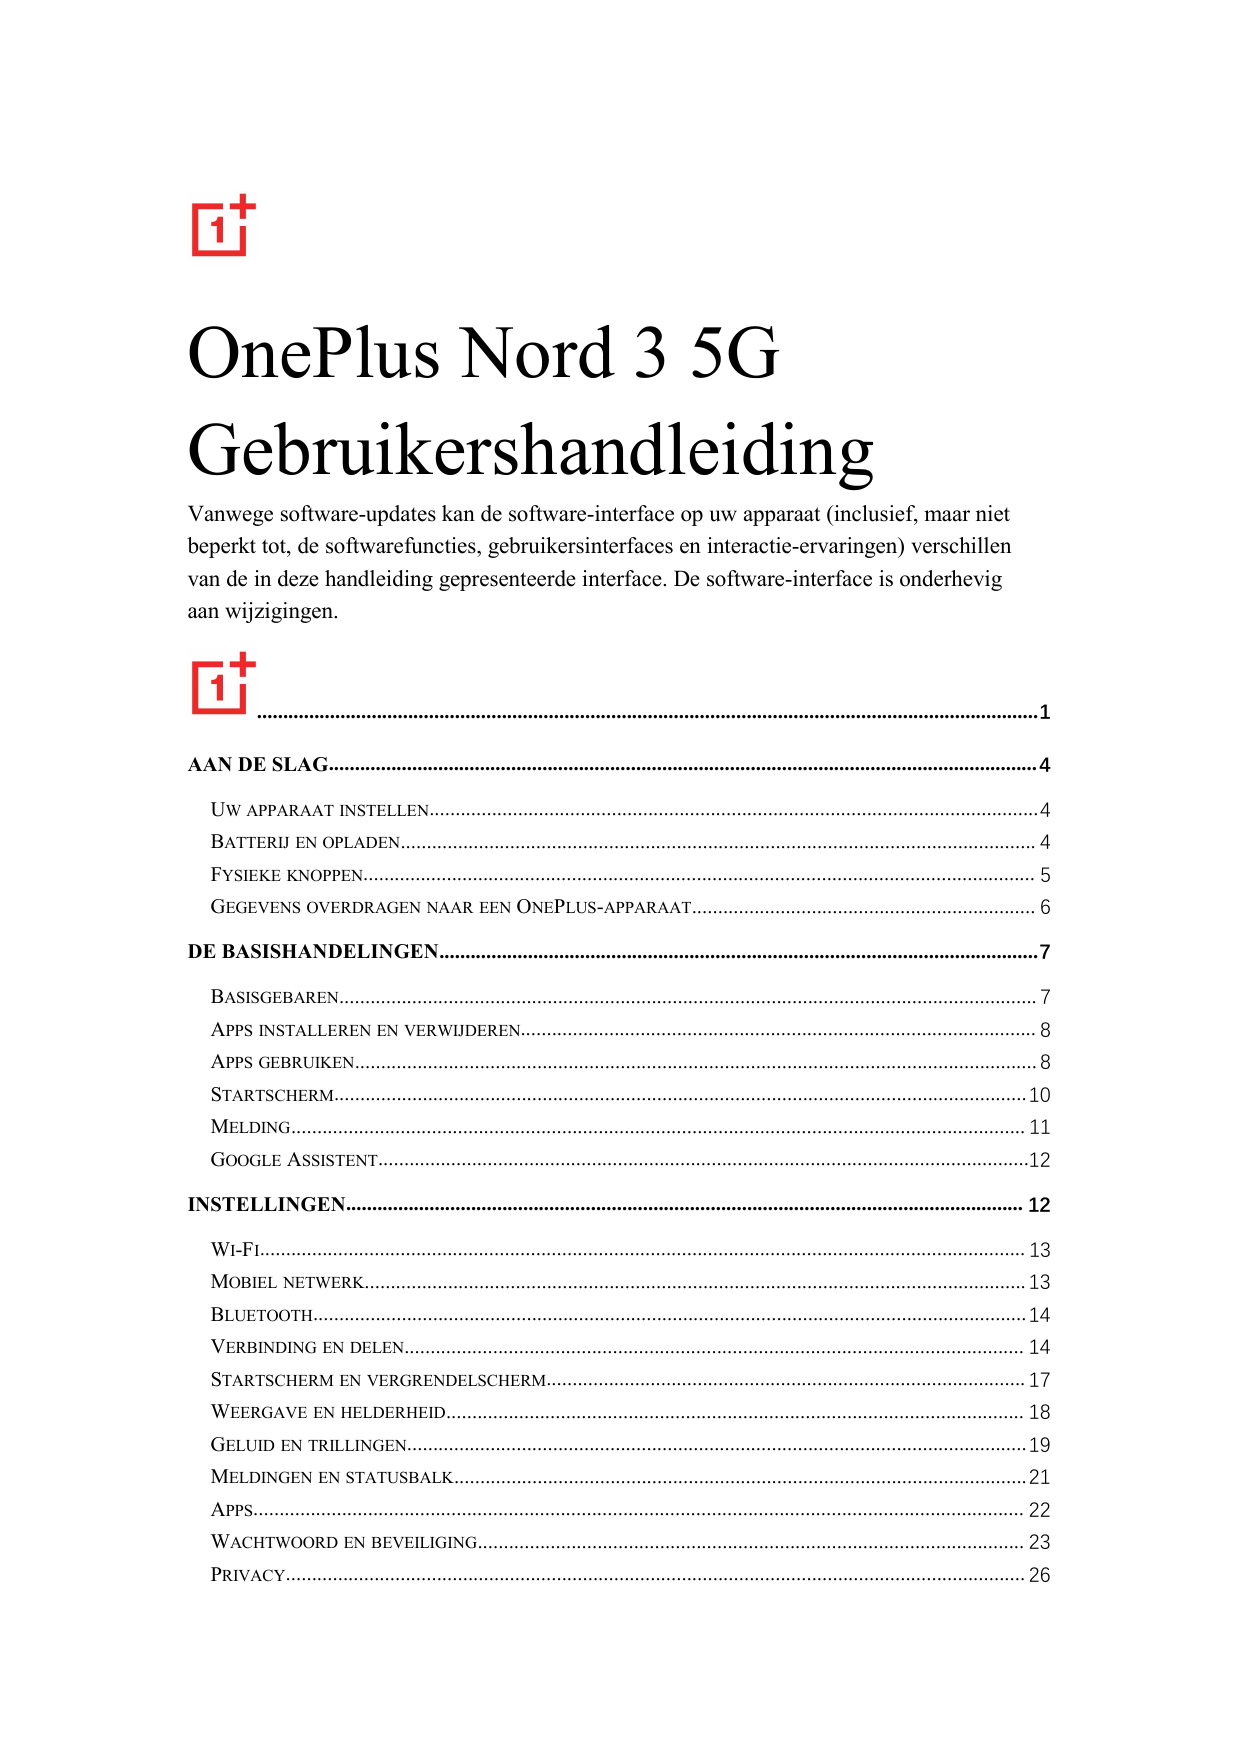 OnePlus Nord 3 5GGebruikershandleidingVanwege software-updates kan de software-interface op uw apparaat (inclusief, maar nietbep